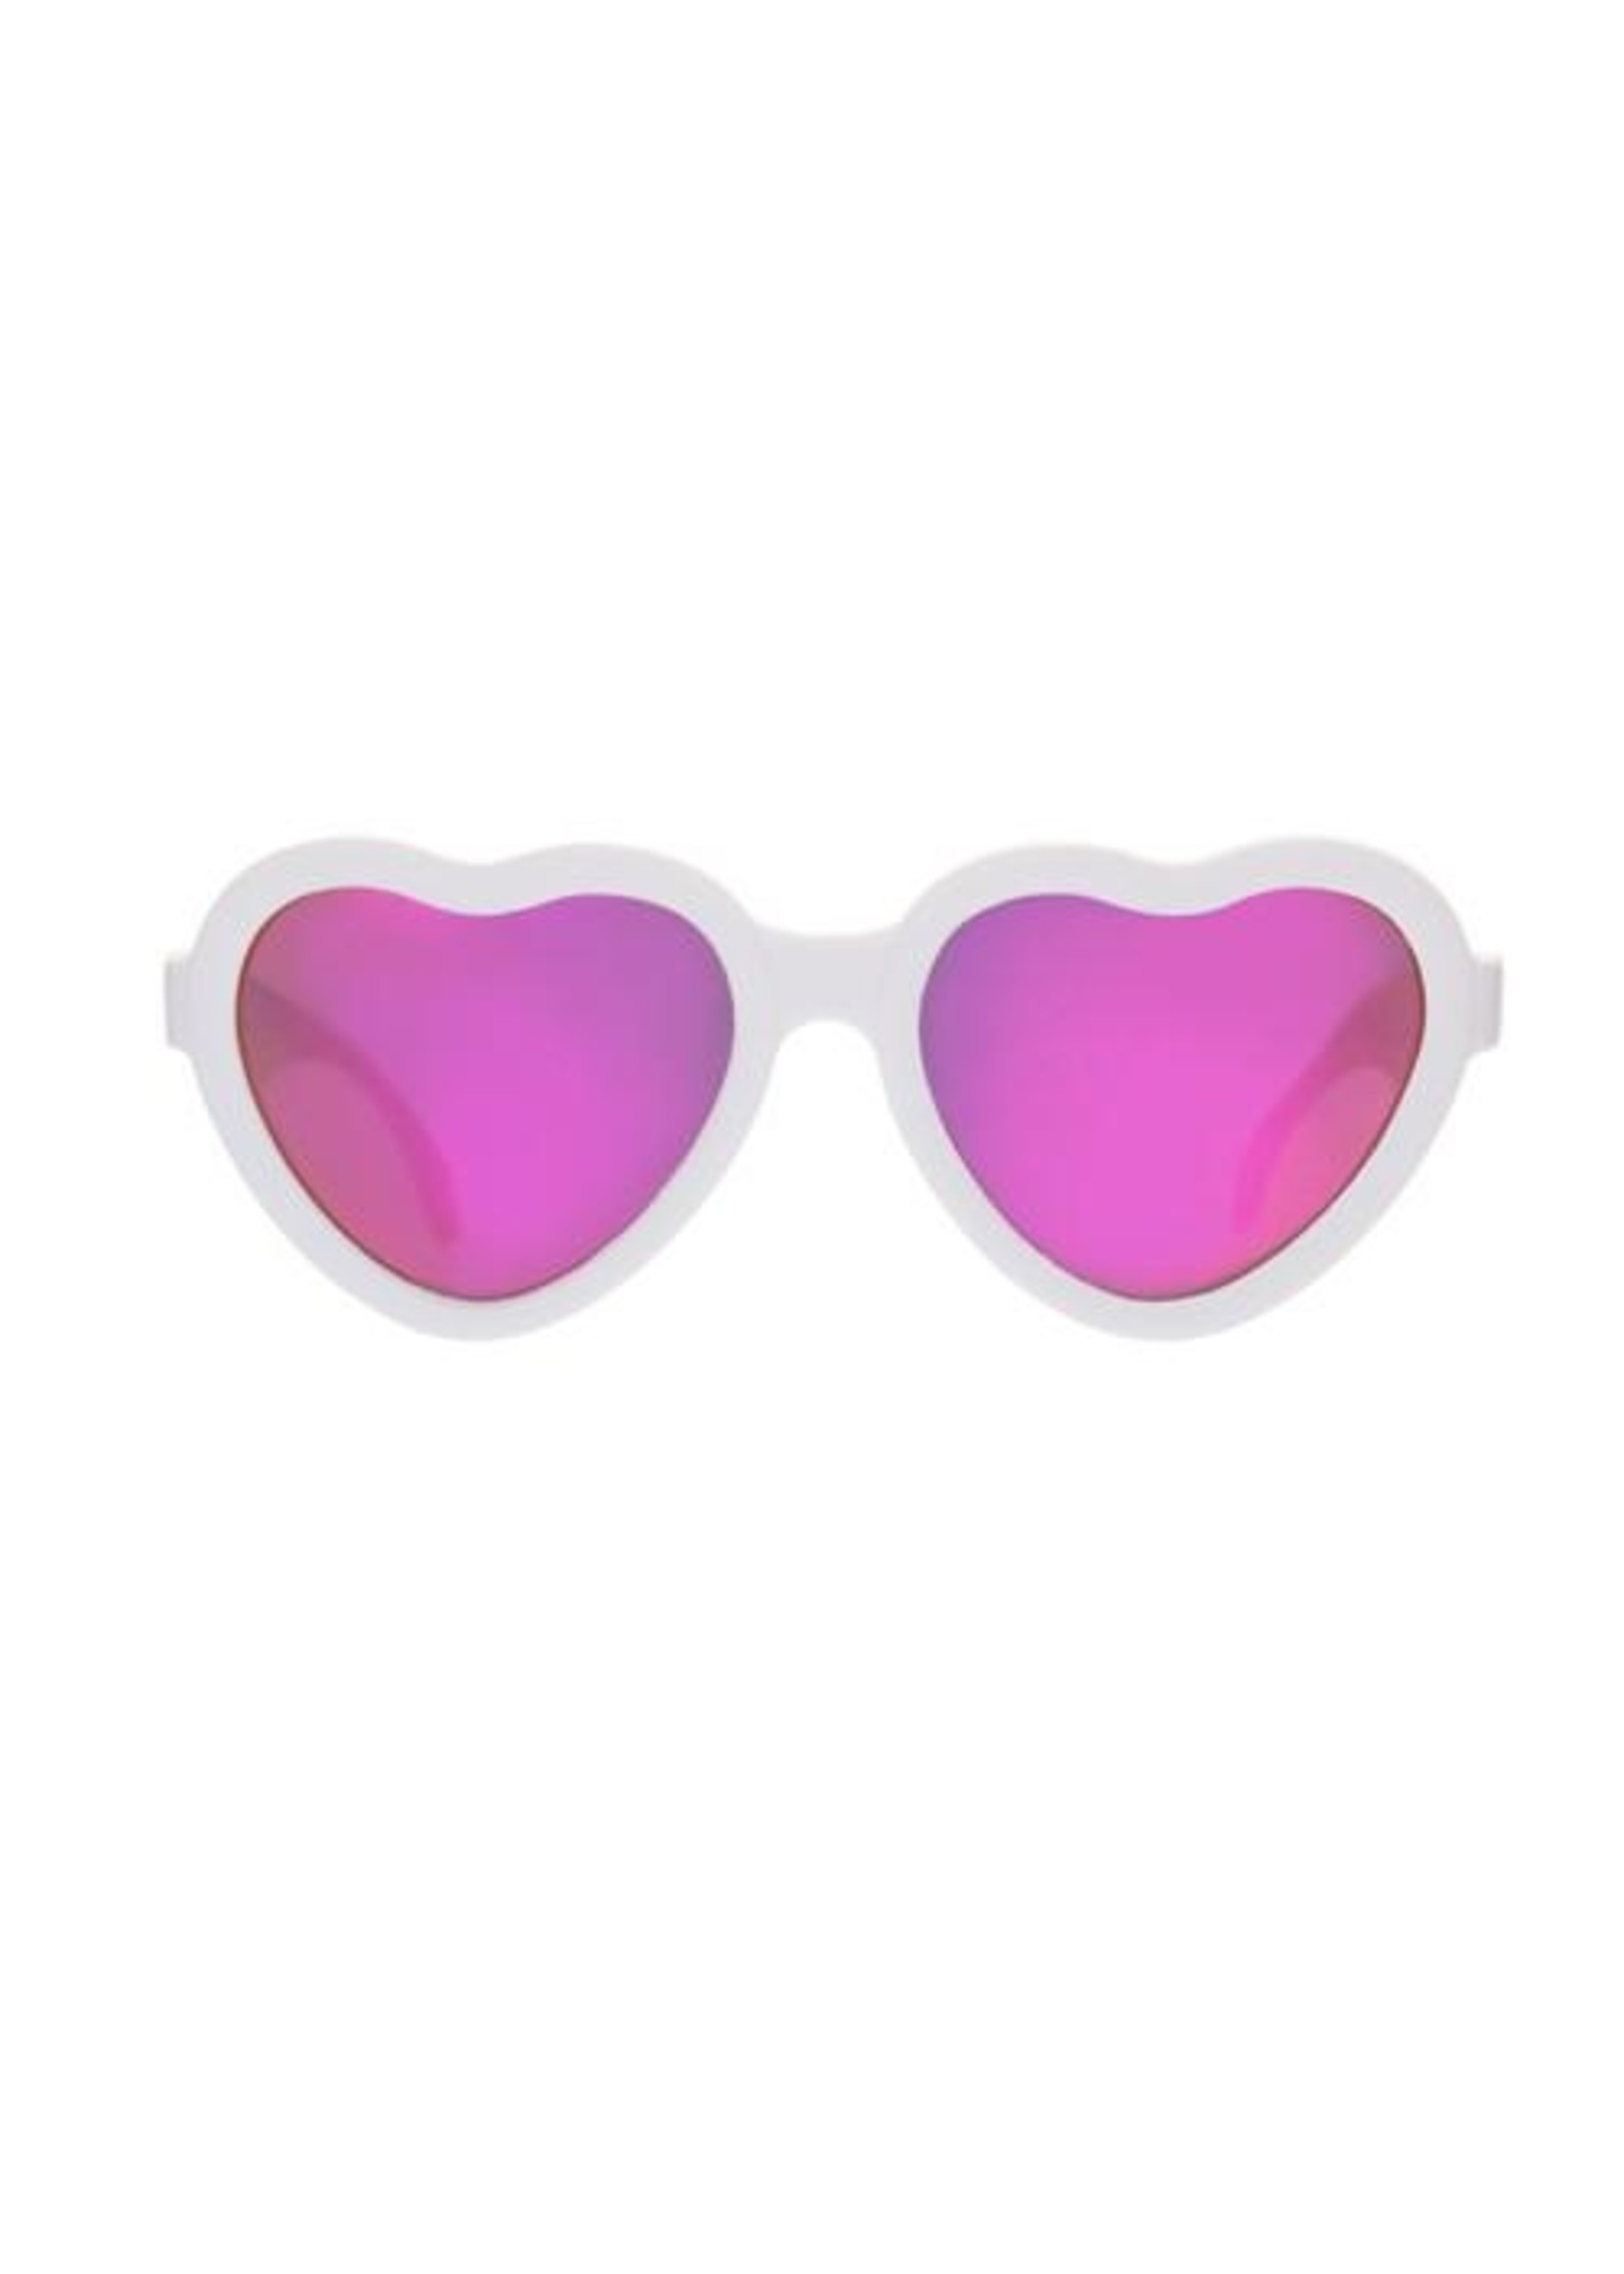 Babiators Sweetheart Sunglasses